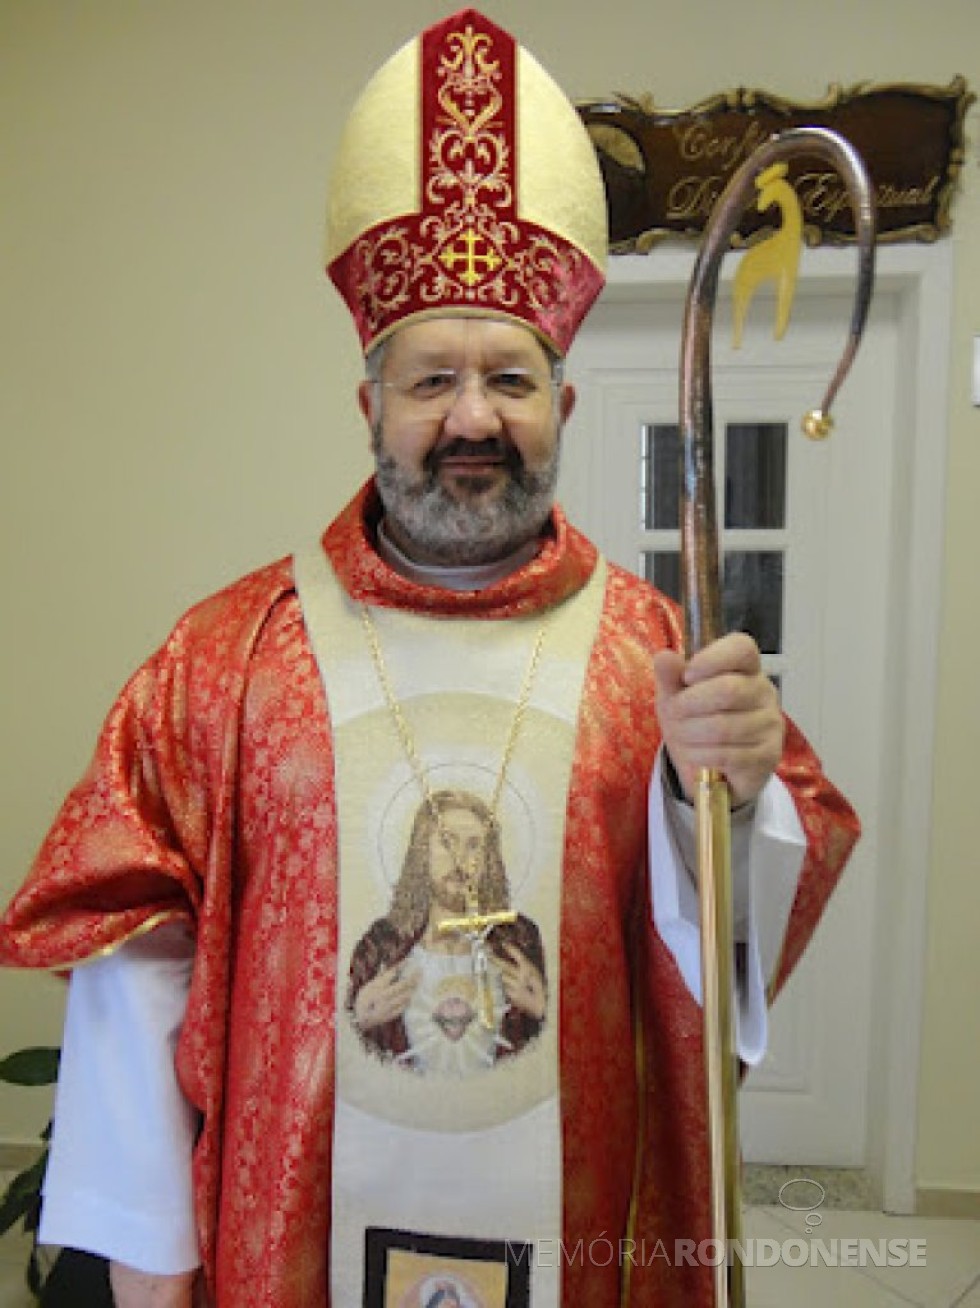 Bispo João Carlos Seneme que assumiu a diocese de Toledo, em agosto de 2013.
Imagem: Acervo Projeto Memória Rondonense - FOTO 4 -